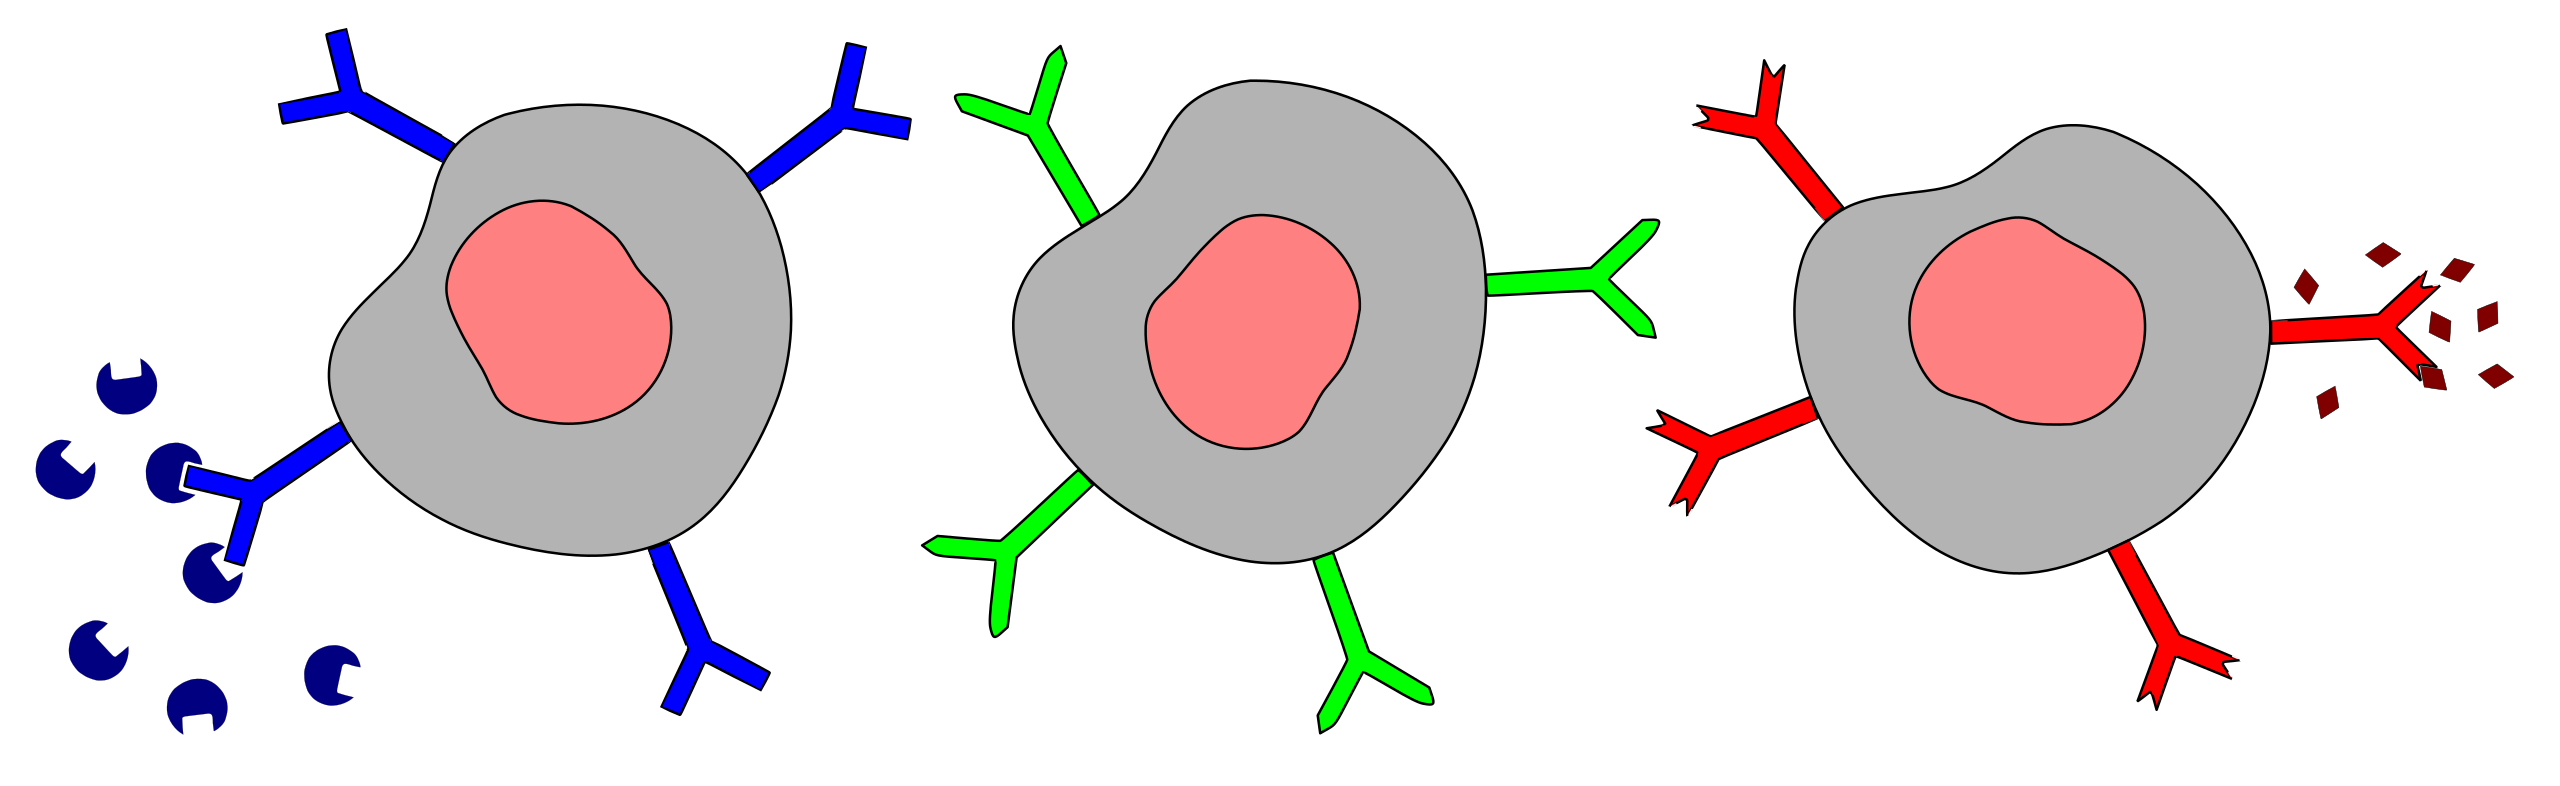 Экзогенные антигены. Антиген рисунок. Антиген антитело. Рецепторы клетки иллюстрация. Антитело строение без фона.